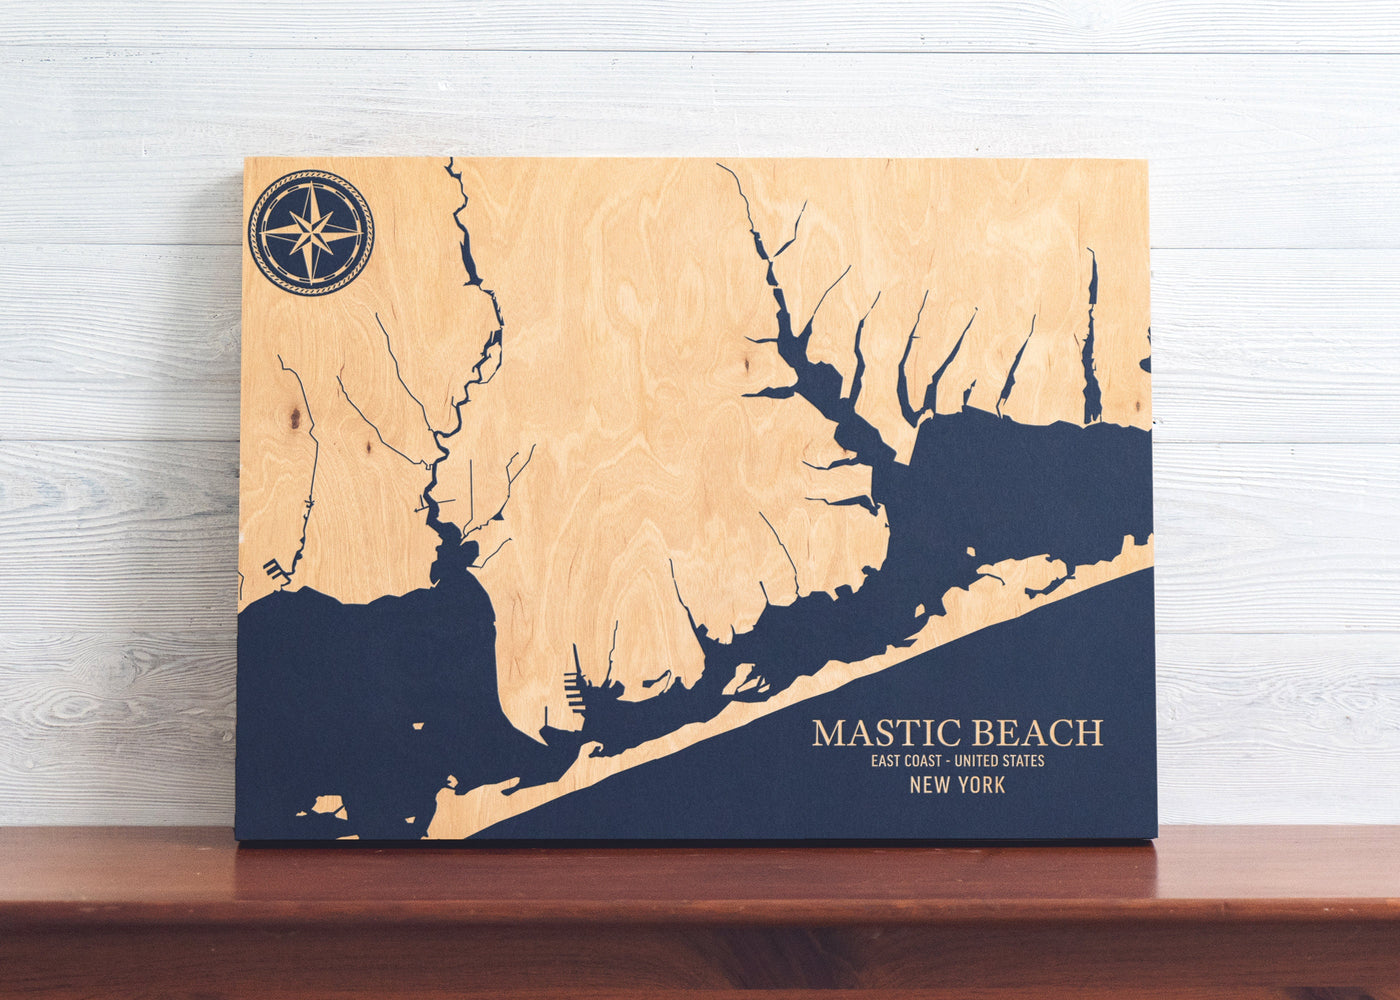 Mastic Beach, New York